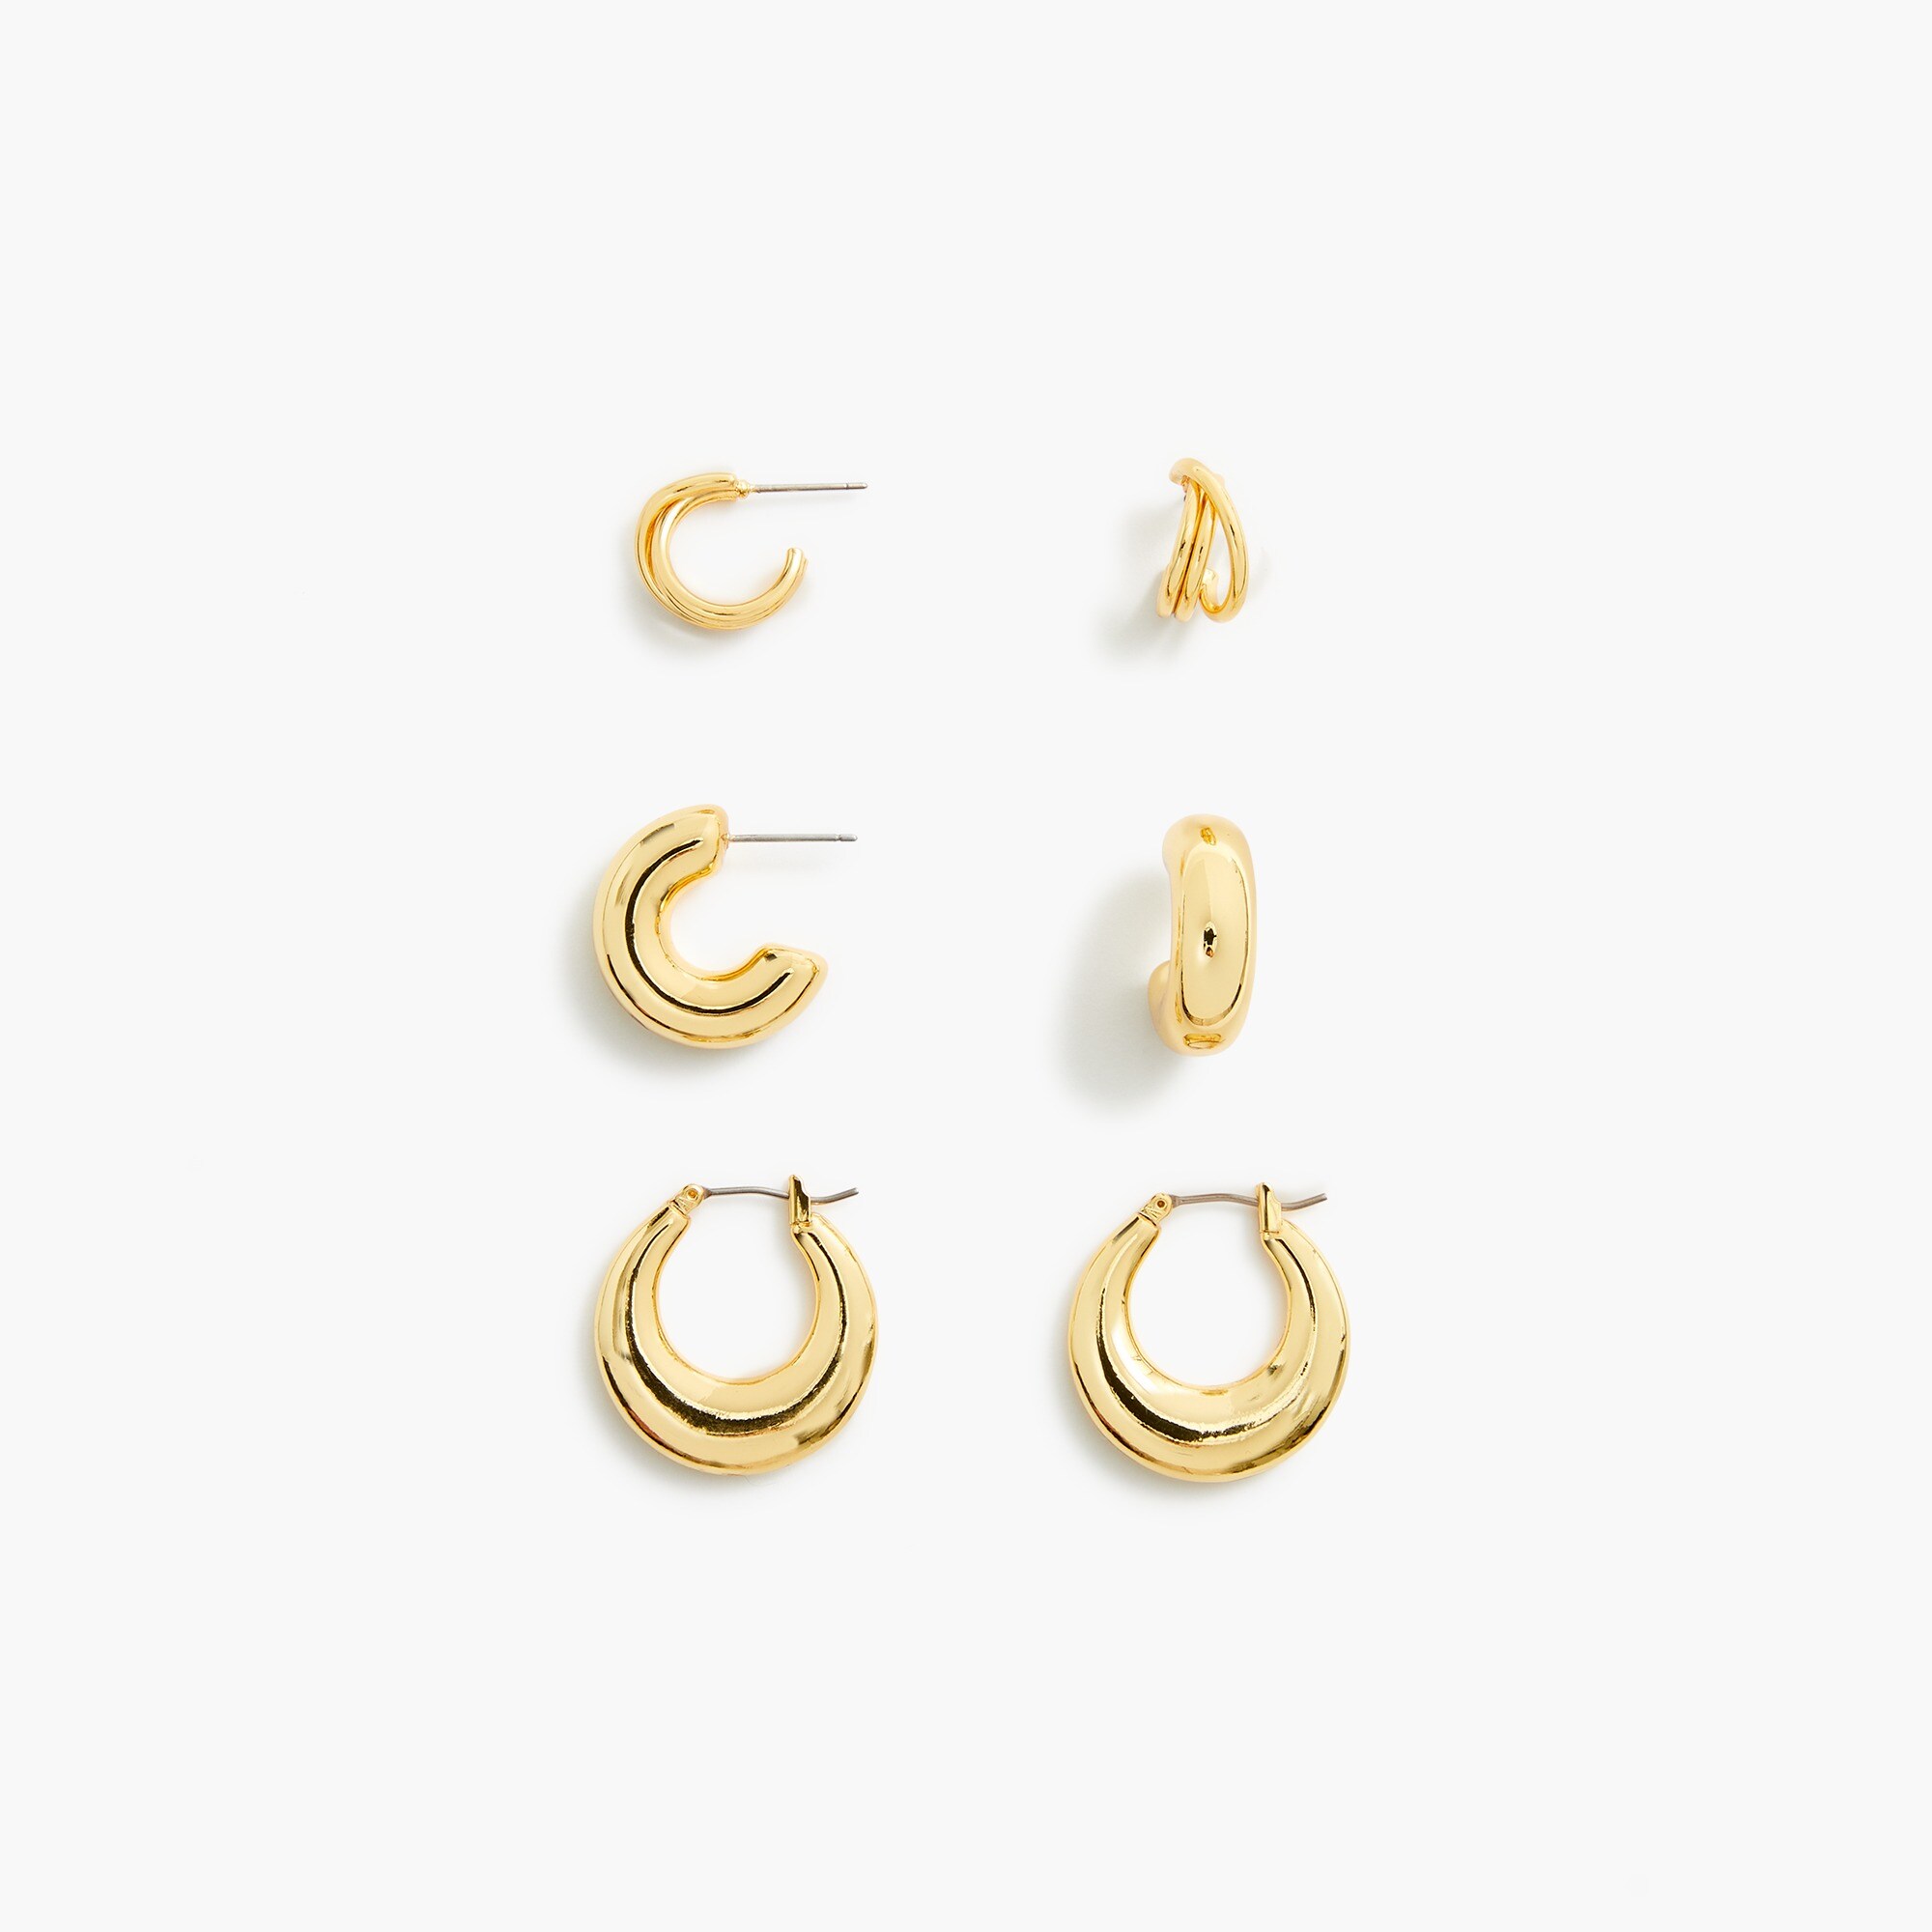  Hoop earrings set-of three